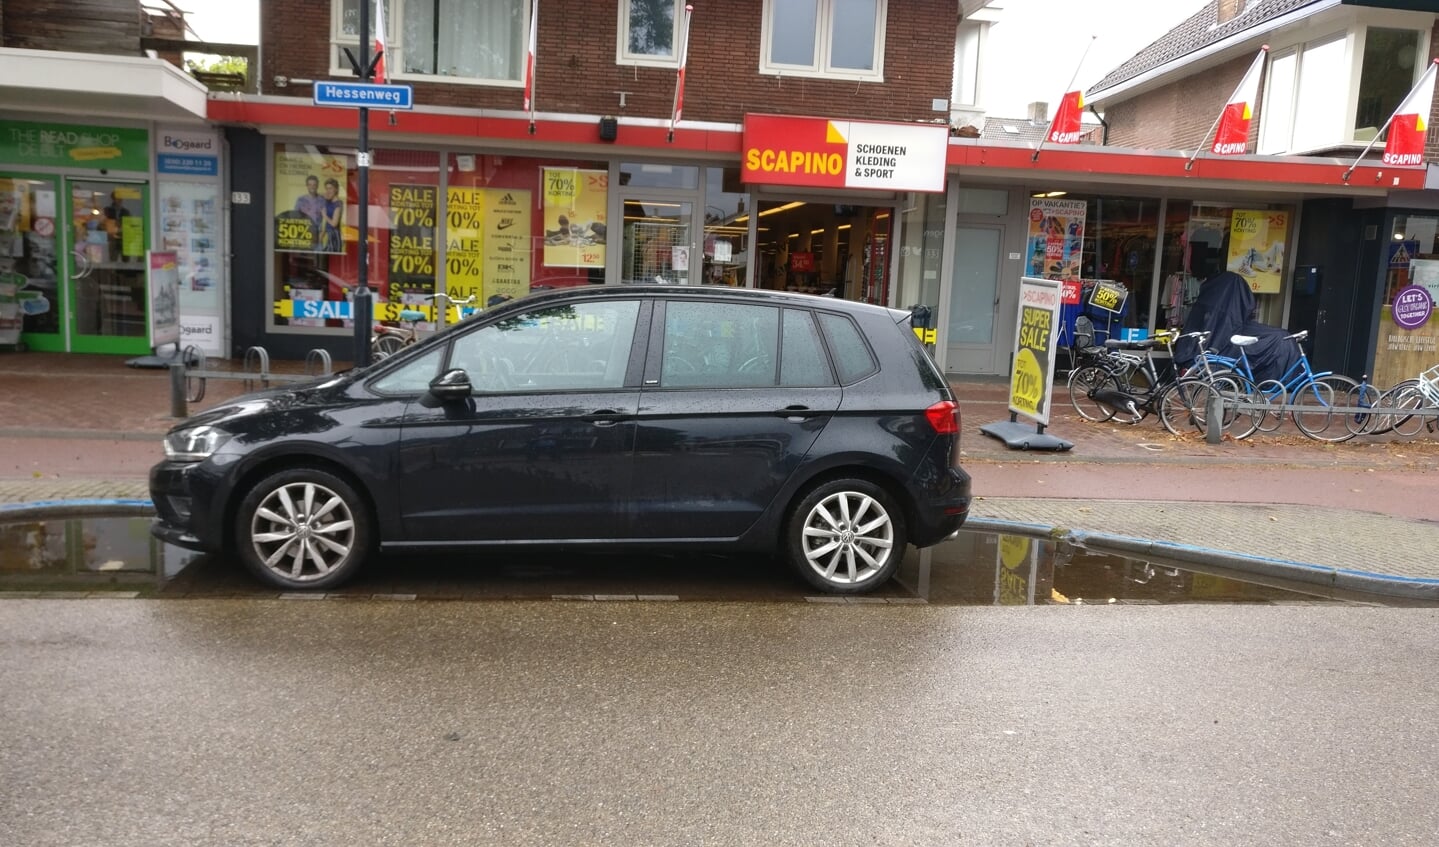 Parkeerplaatsen op de Hessenweg staan lang nadat het geregend heeft nog onder water omdat de afvoer niet goed werkt.